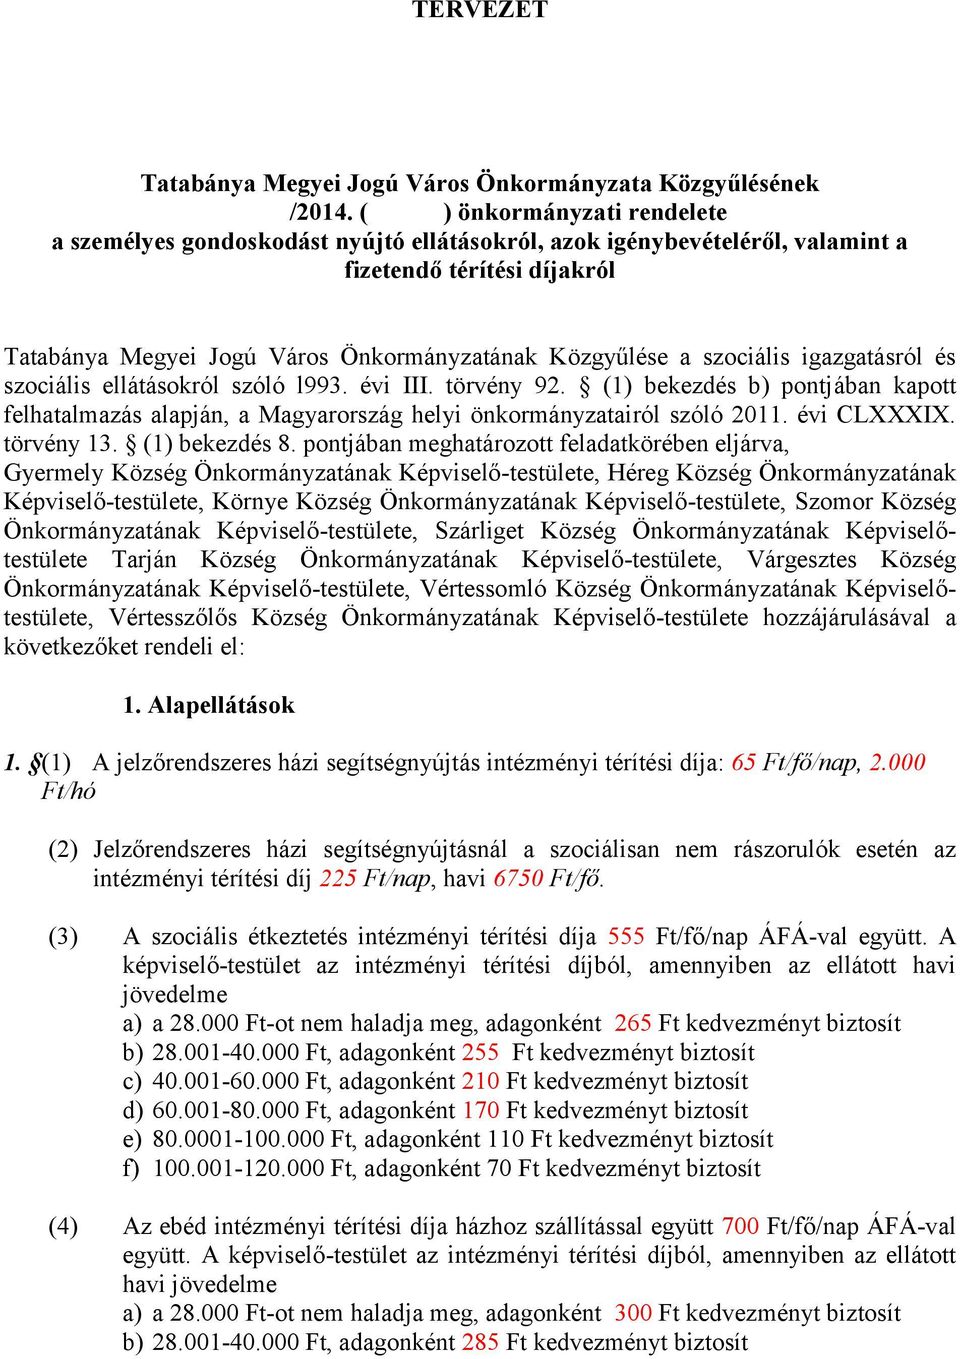 szociális igazgatásról és szociális ellátásokról szóló l993. évi III. törvény 92. (1) bekezdés b) pontjában kapott felhatalmazás alapján, a Magyarország helyi önkormányzatairól szóló 2011.